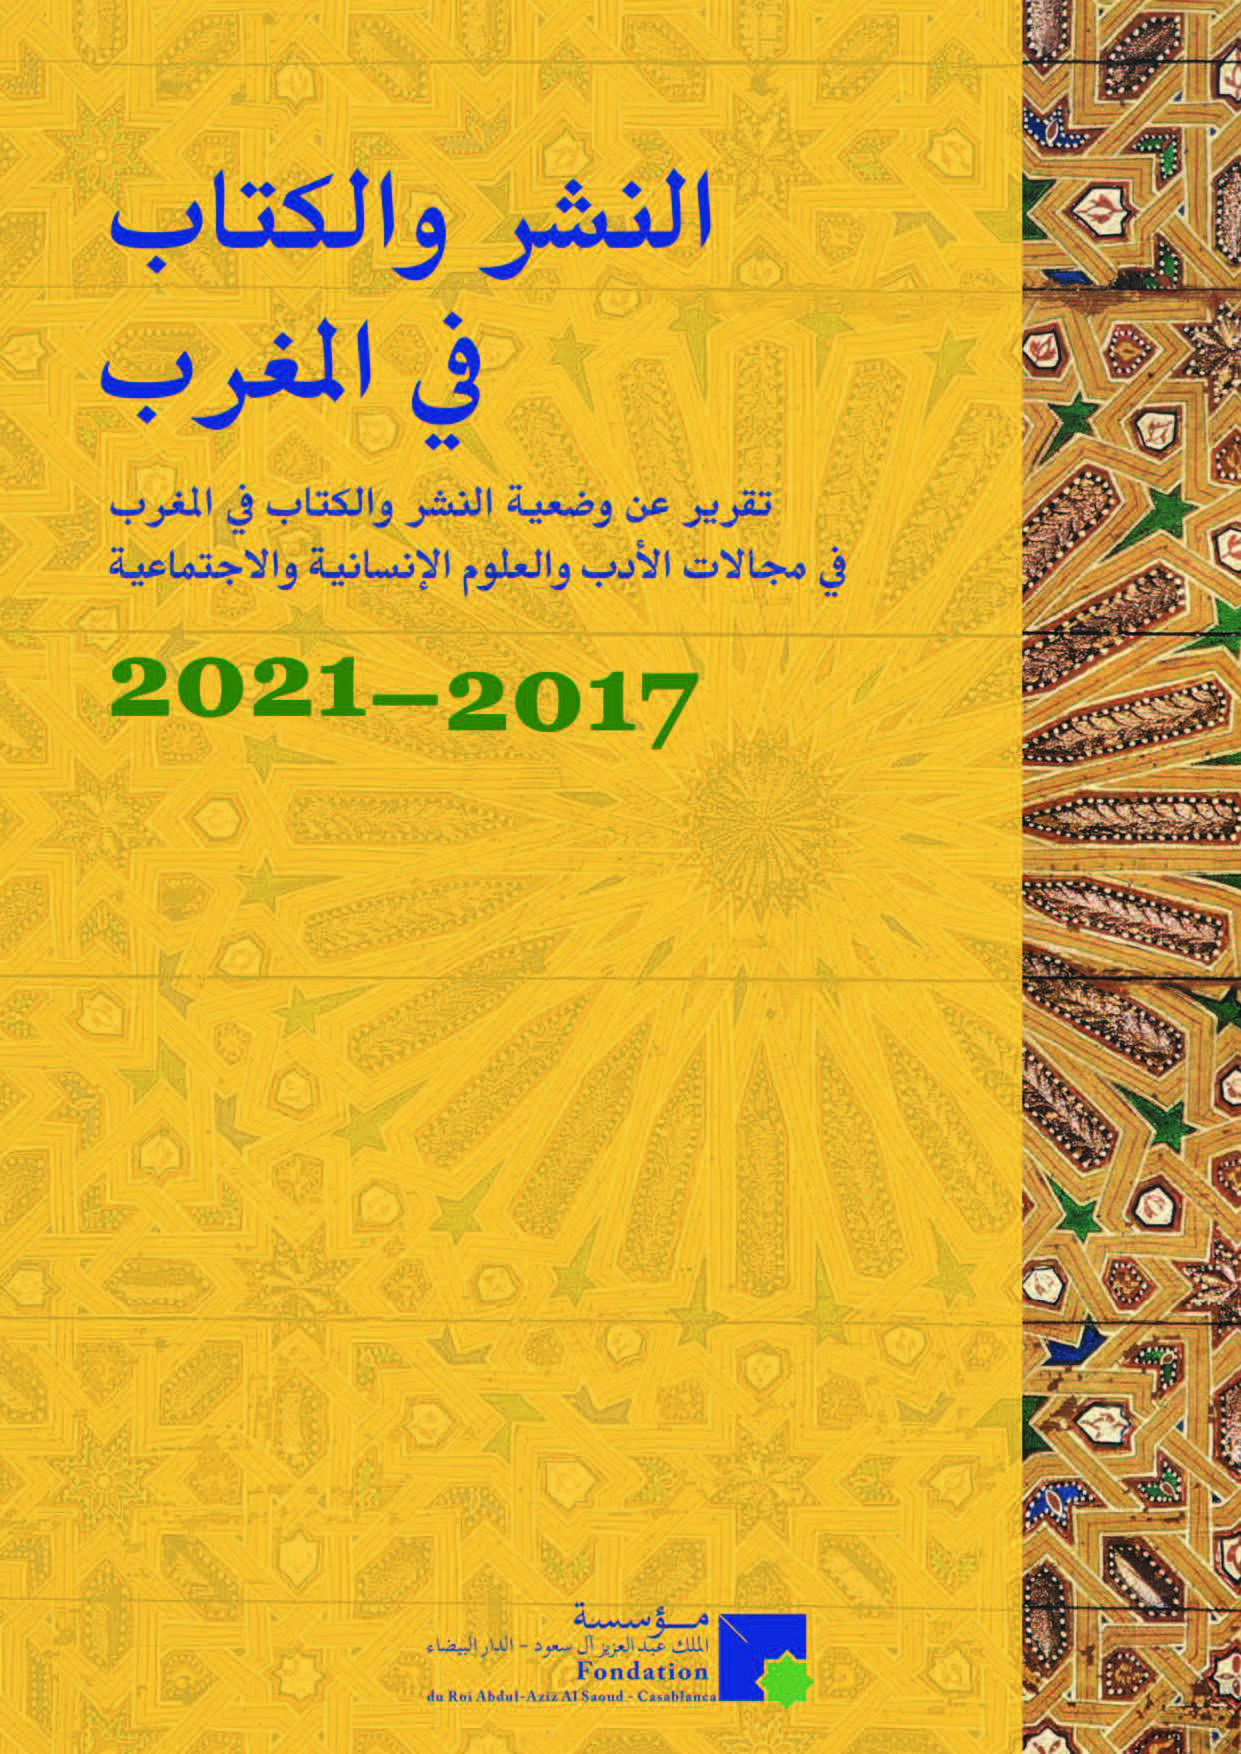 Edition et Livre au Maroc 2017 / 2021